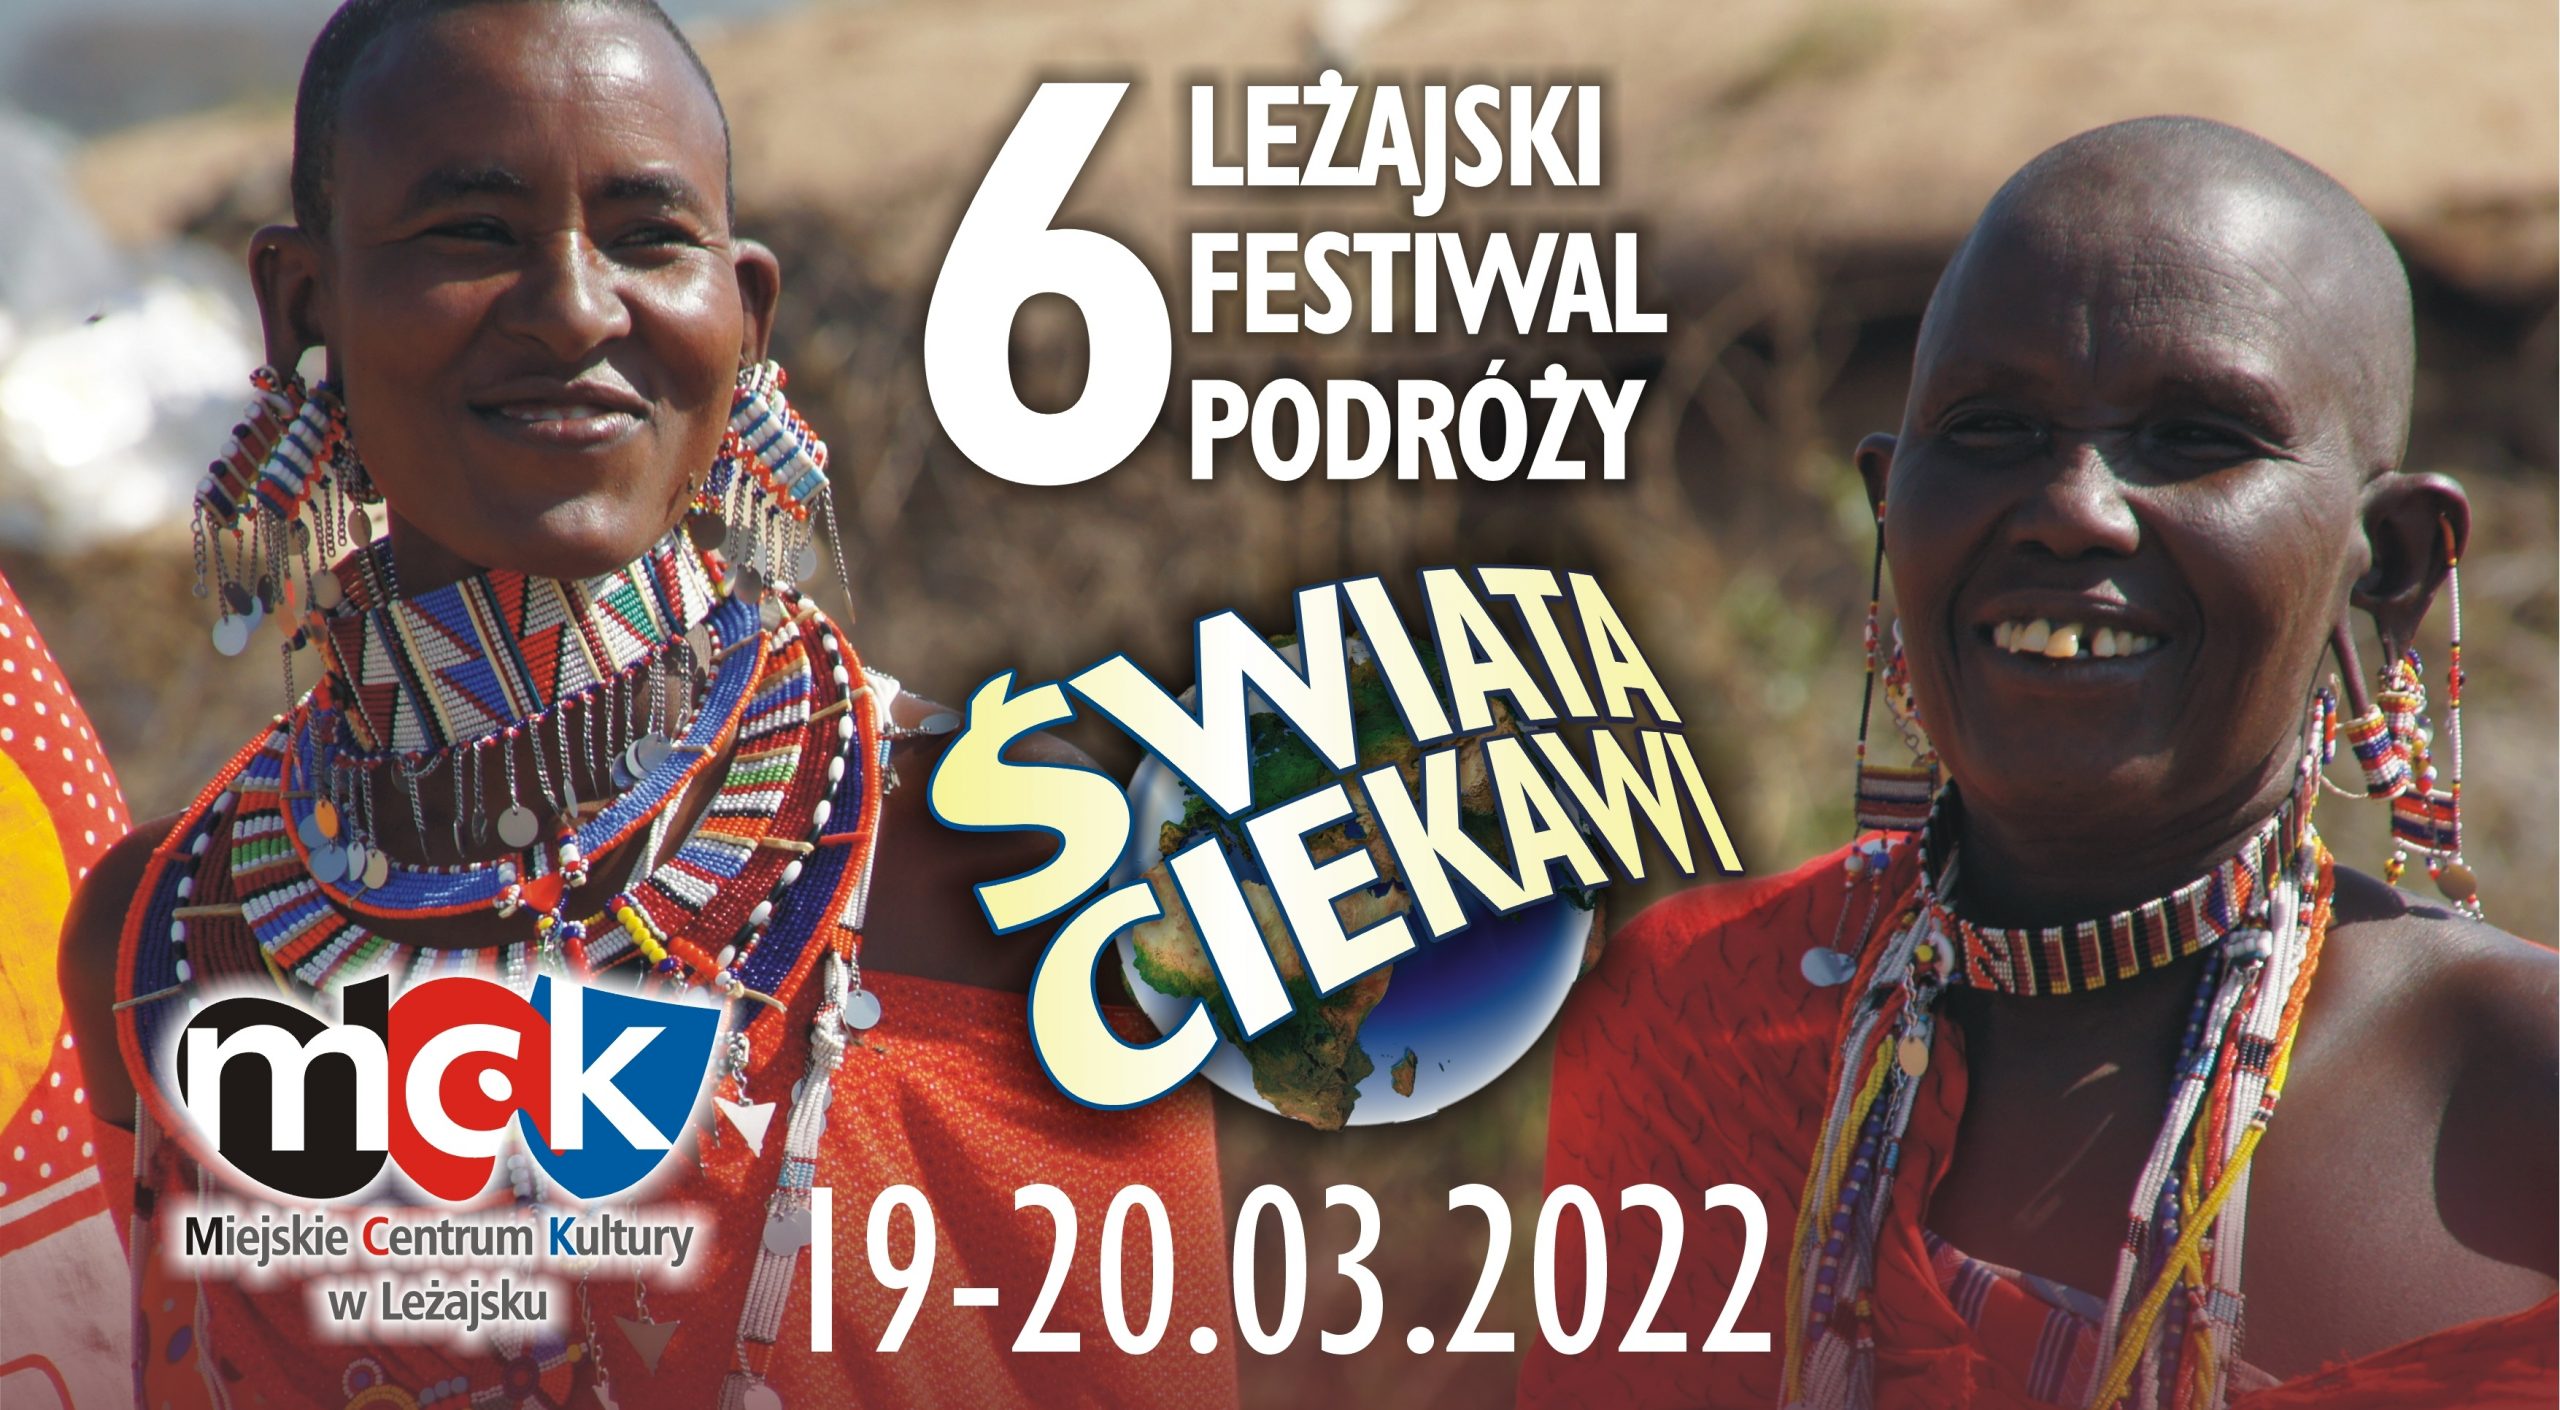 6 Leżajski Festiwal Podróży „Świata ciekawi”